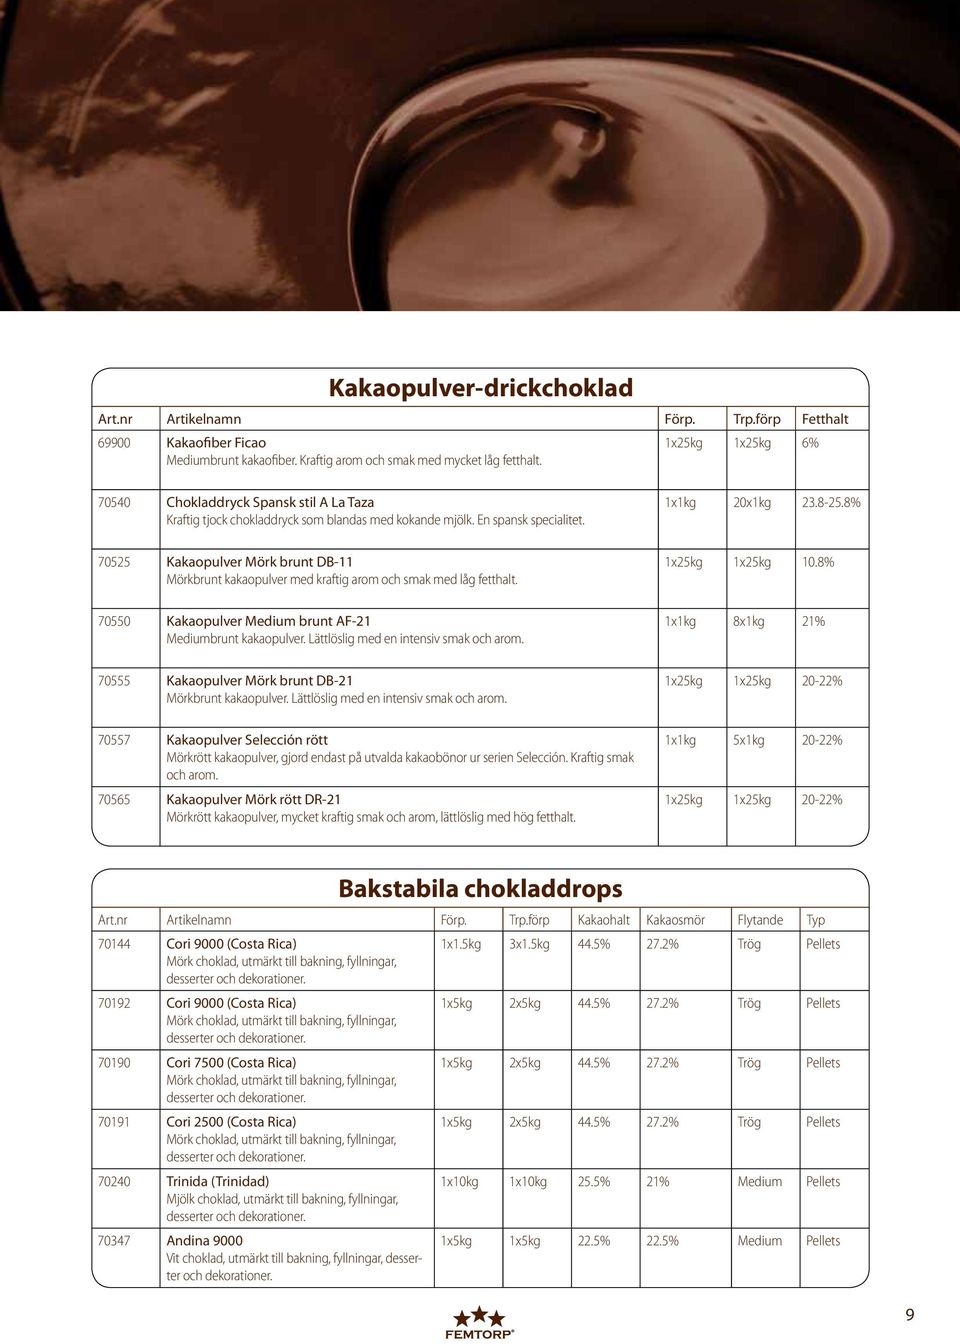 8% 70525 Kakaopulver Mörk brunt DB-11 Mörkbrunt kakaopulver med kraftig arom och smak med låg fetthalt. 1x25kg 1x25kg 10.8% 70550 Kakaopulver Medium brunt AF-21 Mediumbrunt kakaopulver.